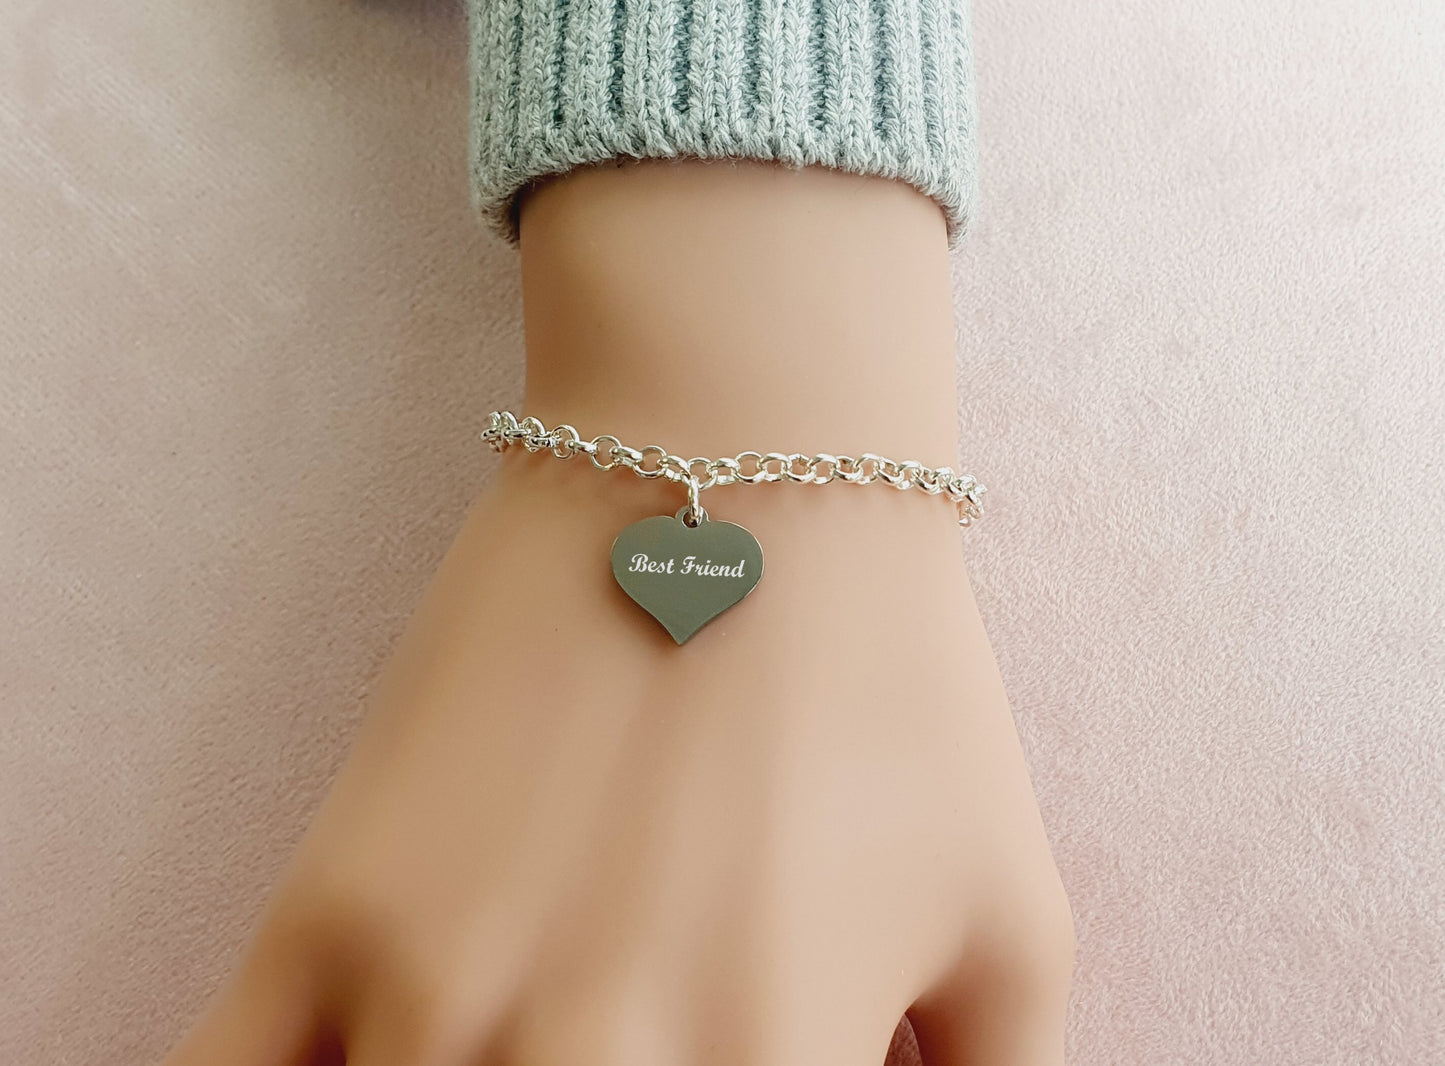 Best Friend Engraved Heart Charm Link Bracelet, Gift for Girl's and Women